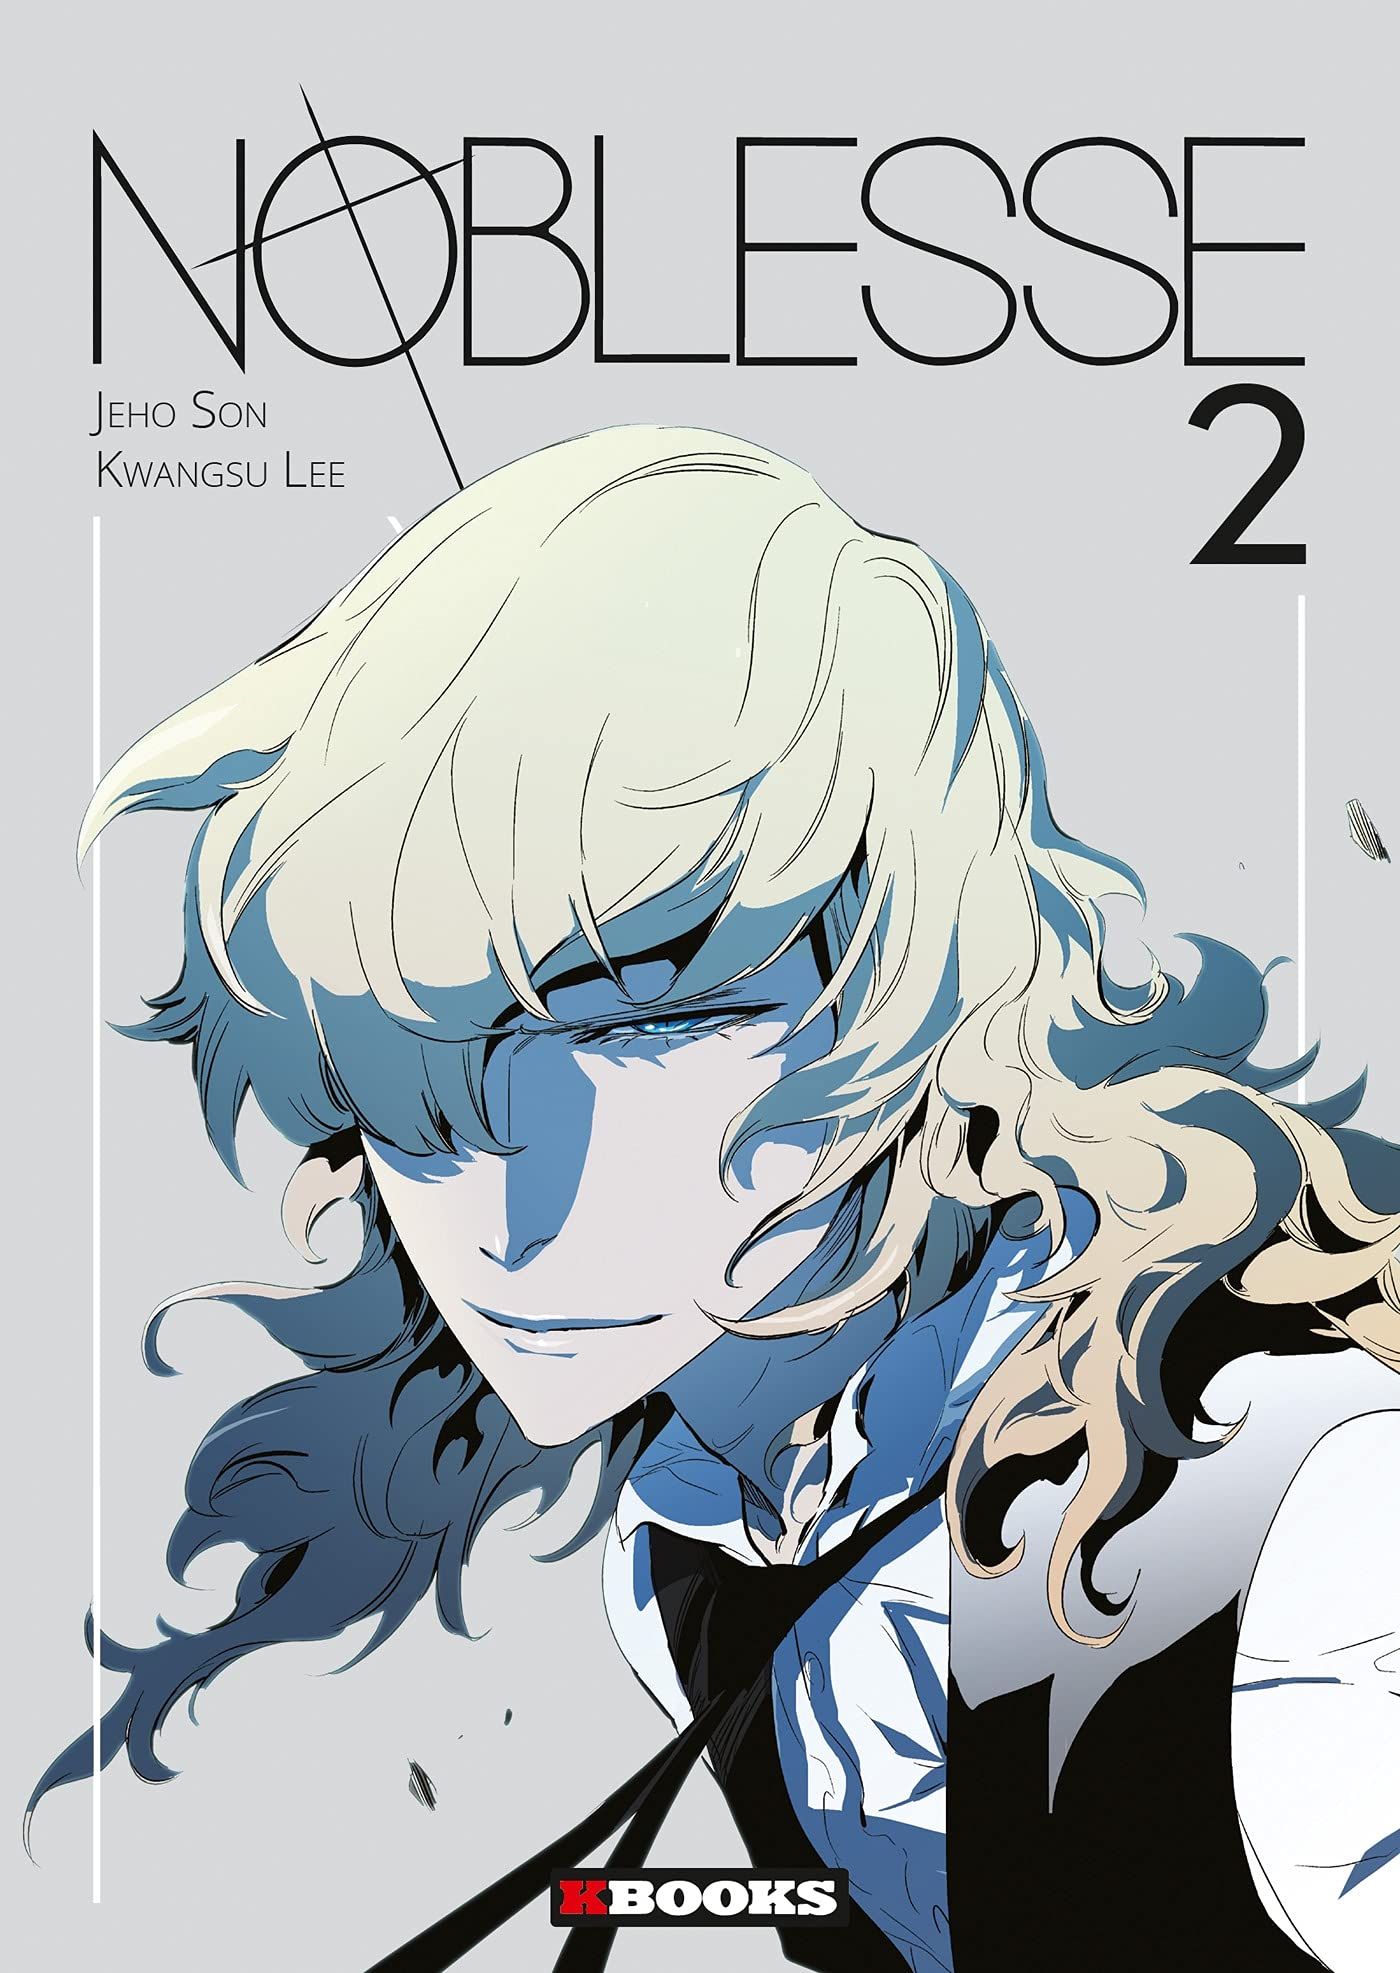  Noblesse - Manga - Manga news